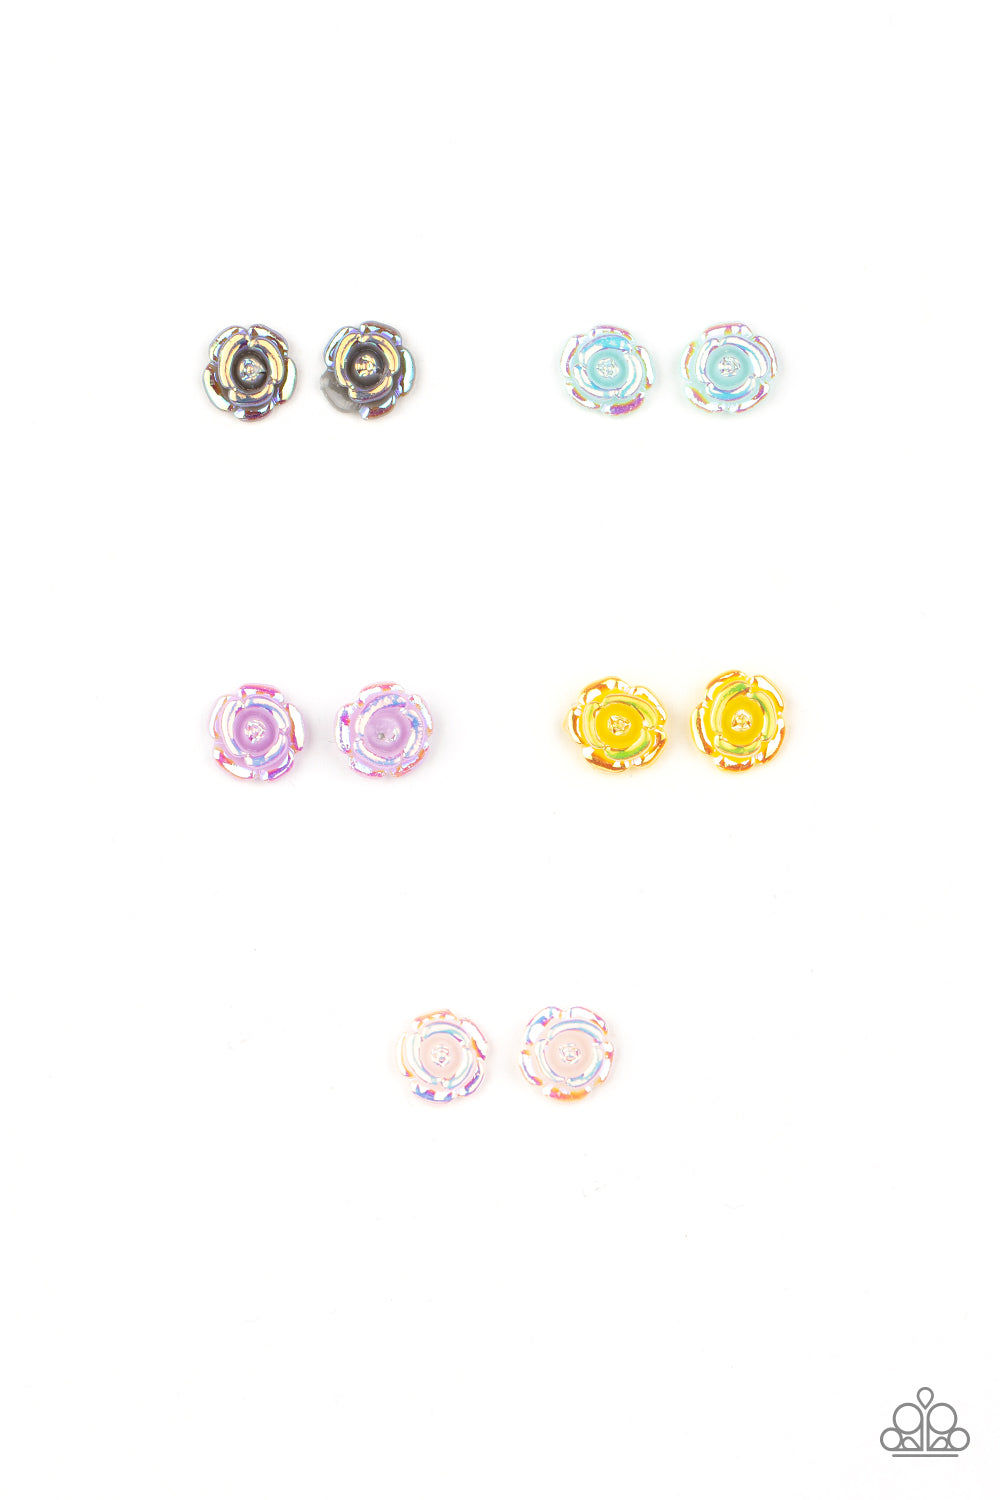 starlet-shimmer-earring-kit-4848-p5ss-mtxx-317xx